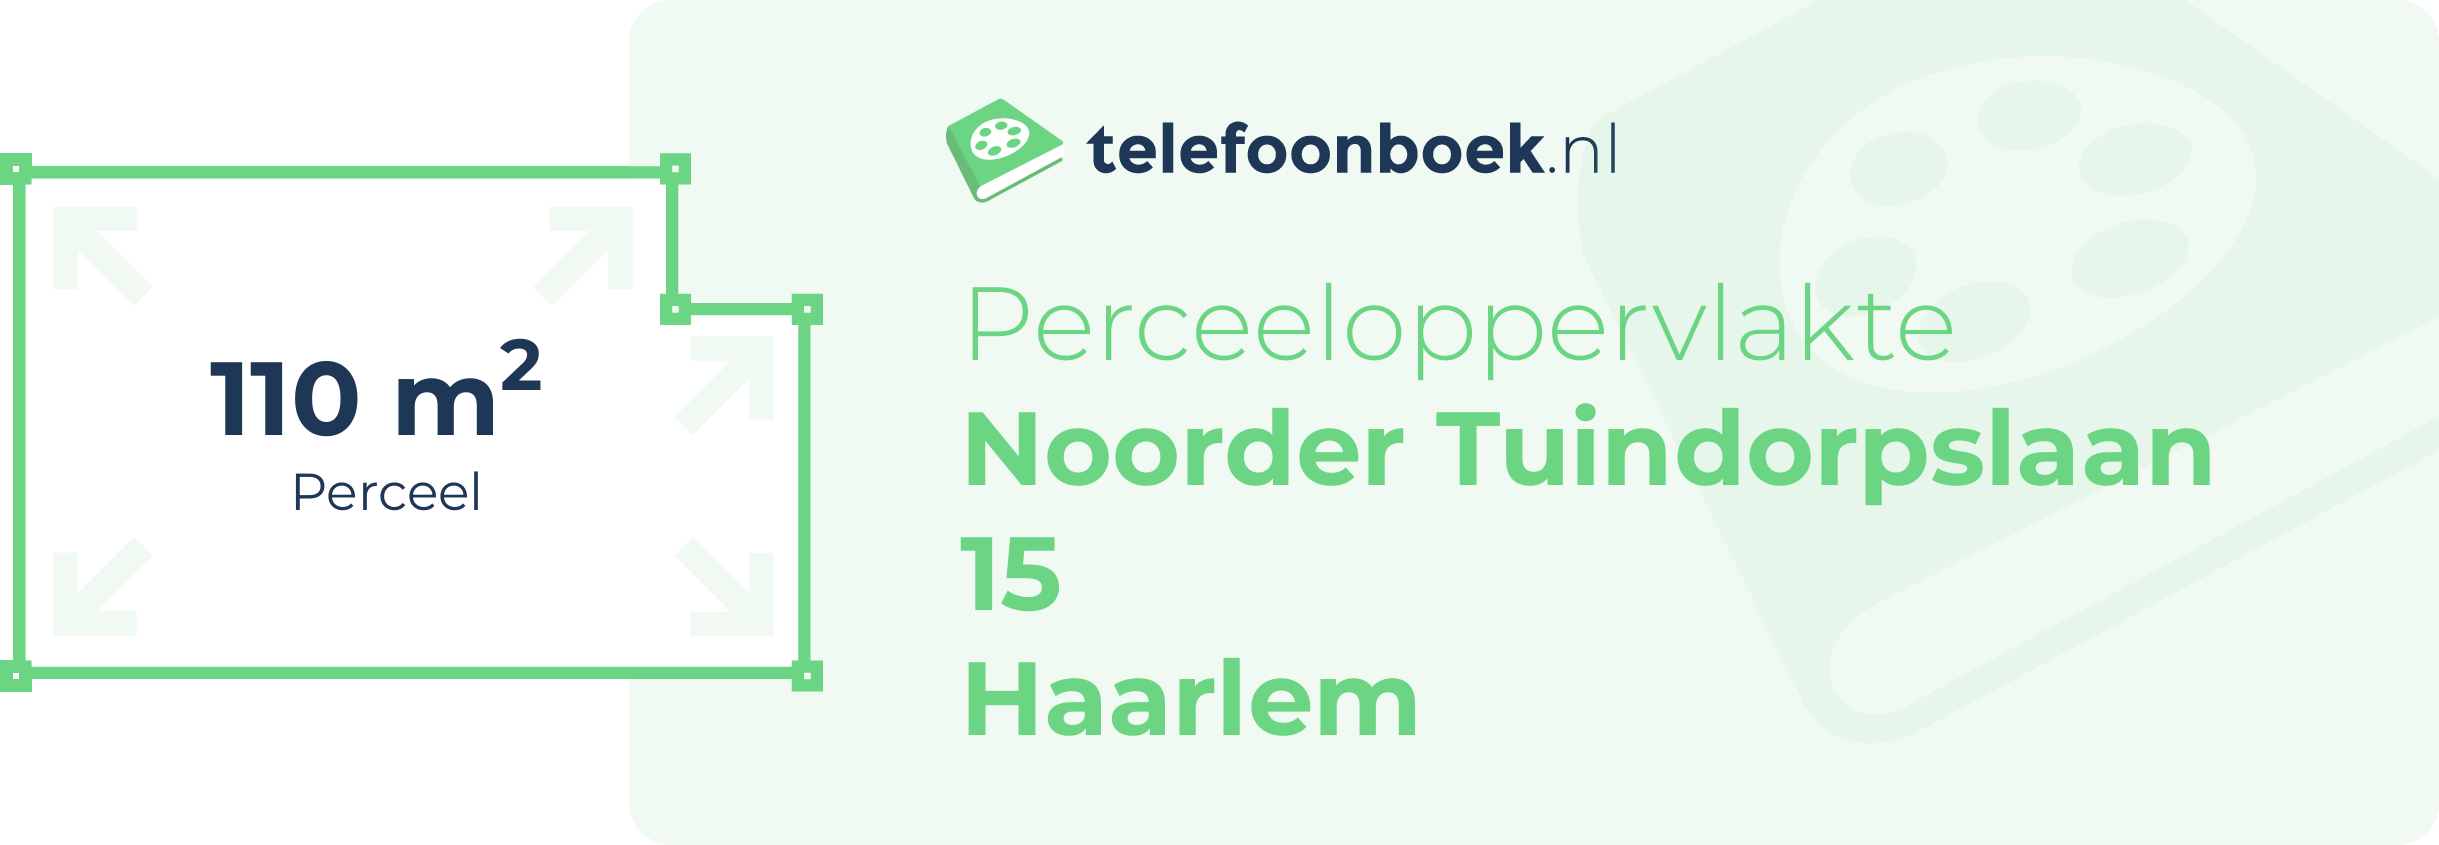 Perceeloppervlakte Noorder Tuindorpslaan 15 Haarlem